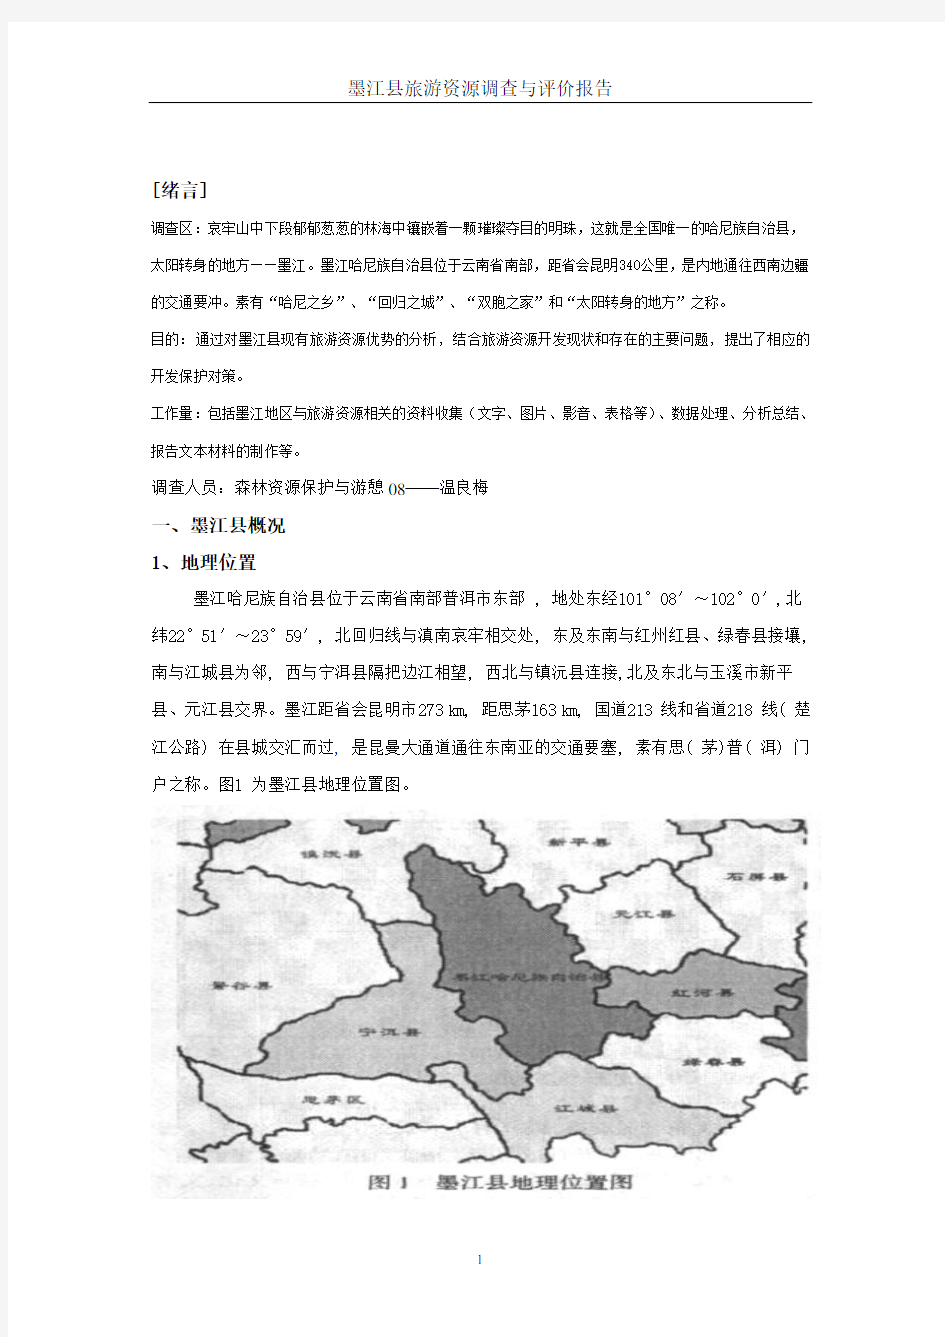 墨江县旅游资源调查与评价报告